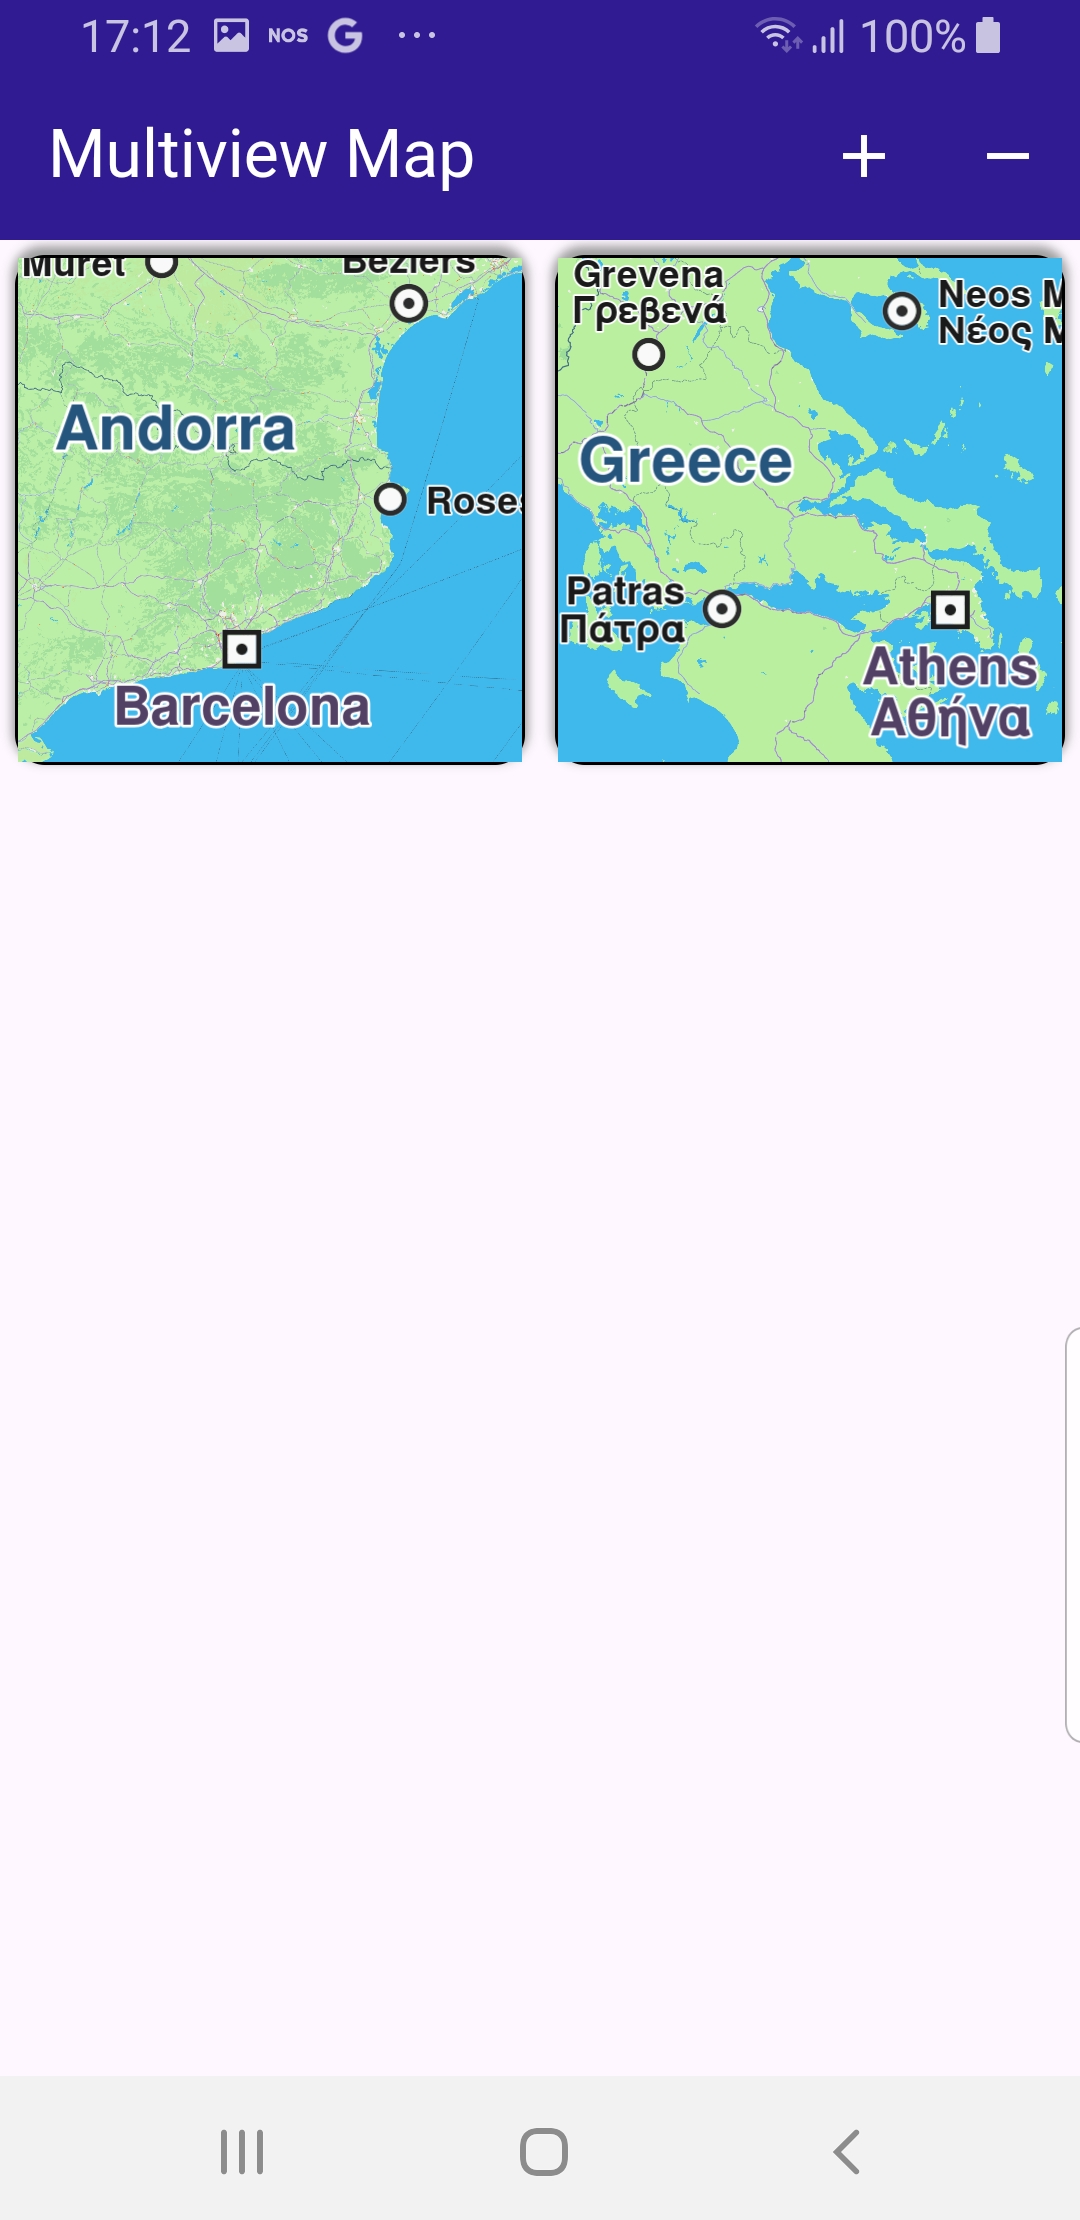 multiview_map - example flutter screenshot